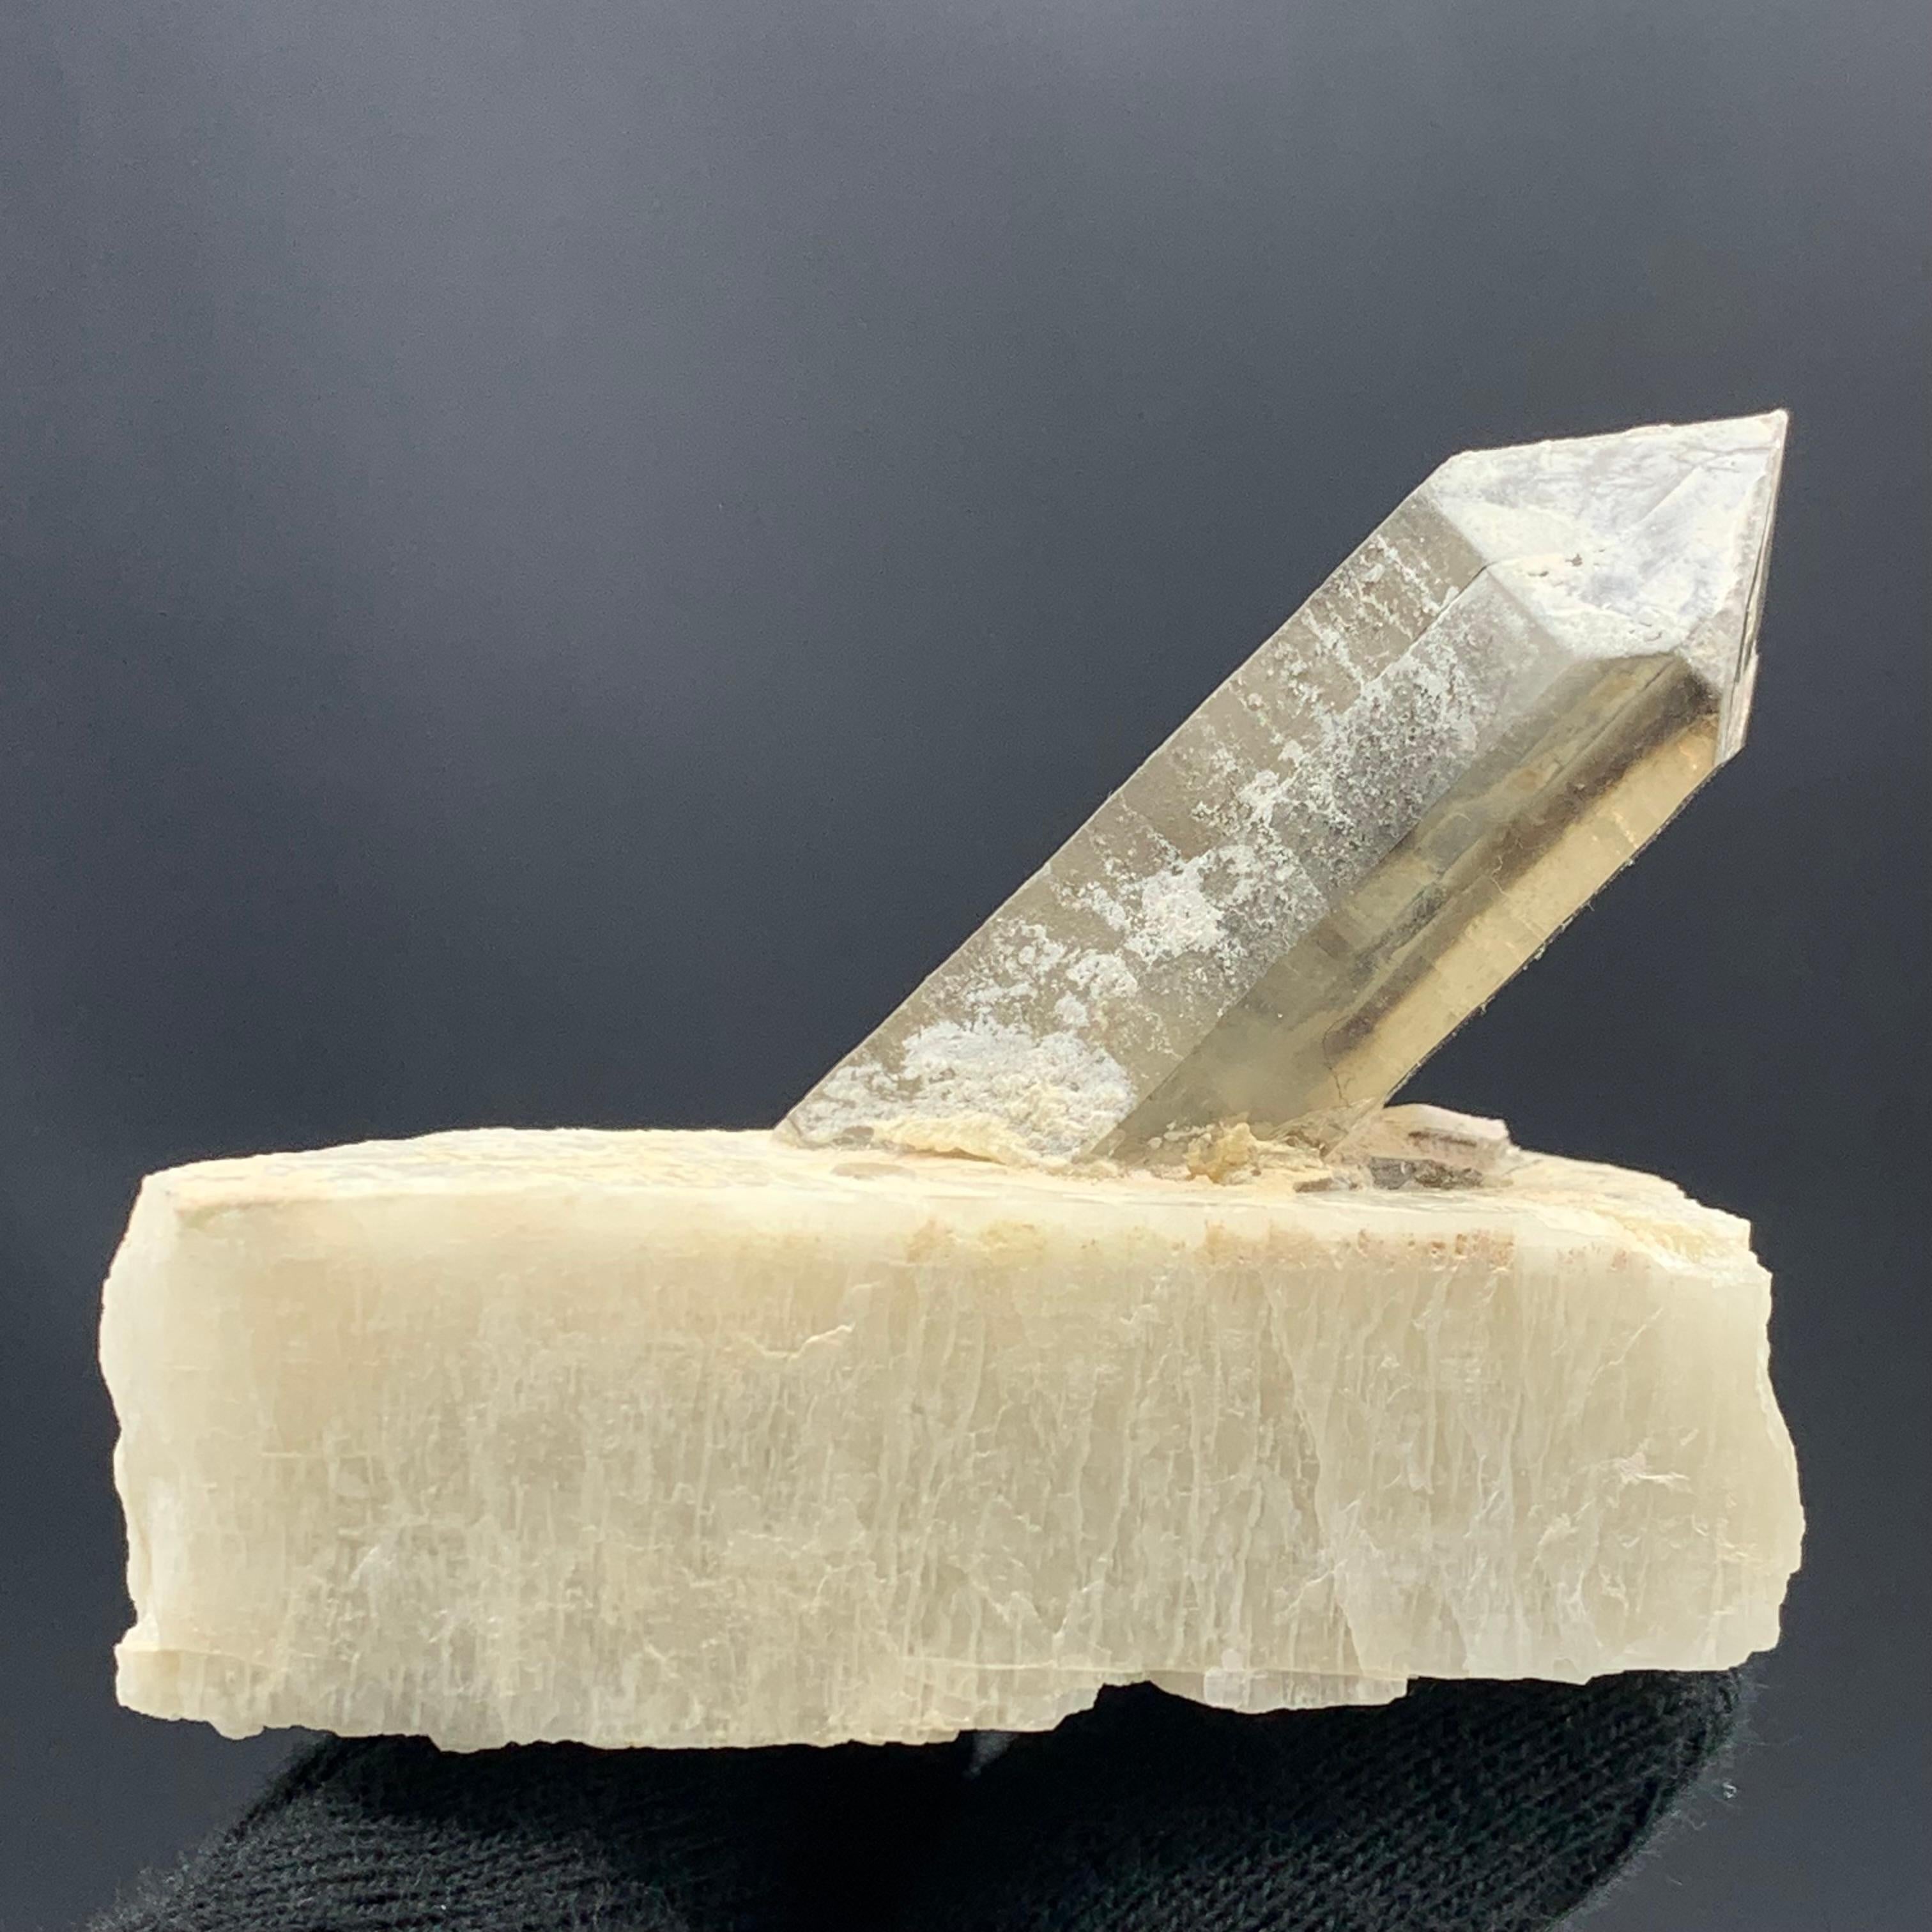 Pakistani 90.00 Gram Gorgeous Quartz Crystal Attached With Feldspar From Pakistan  For Sale